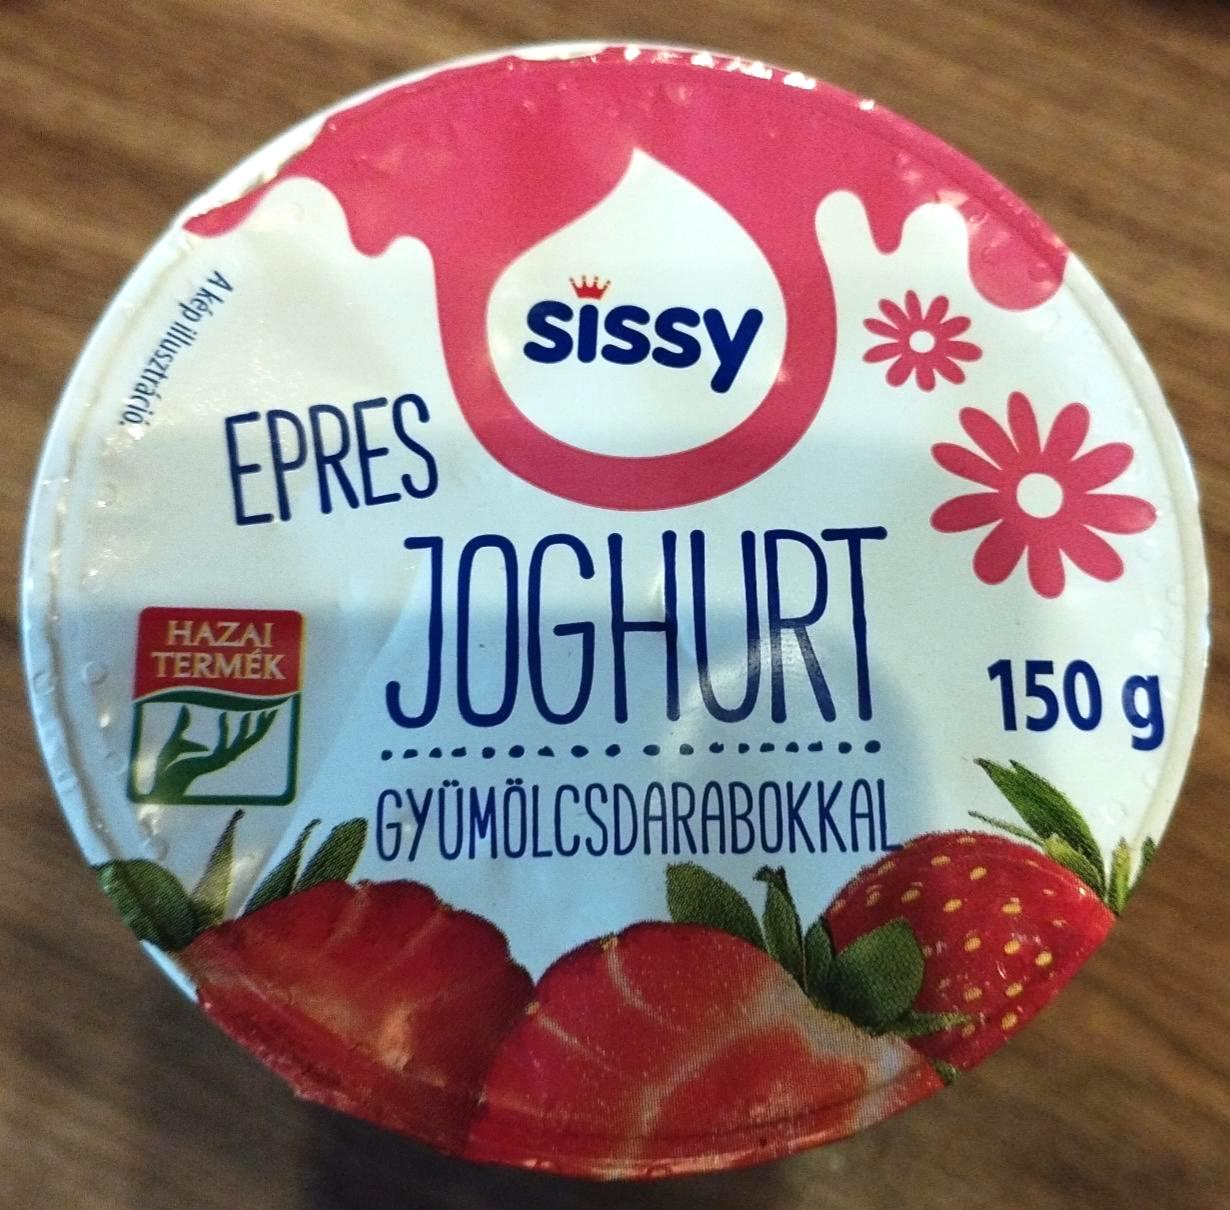 Képek - Epres joghurt gyümölcsdarabokkal Sissy